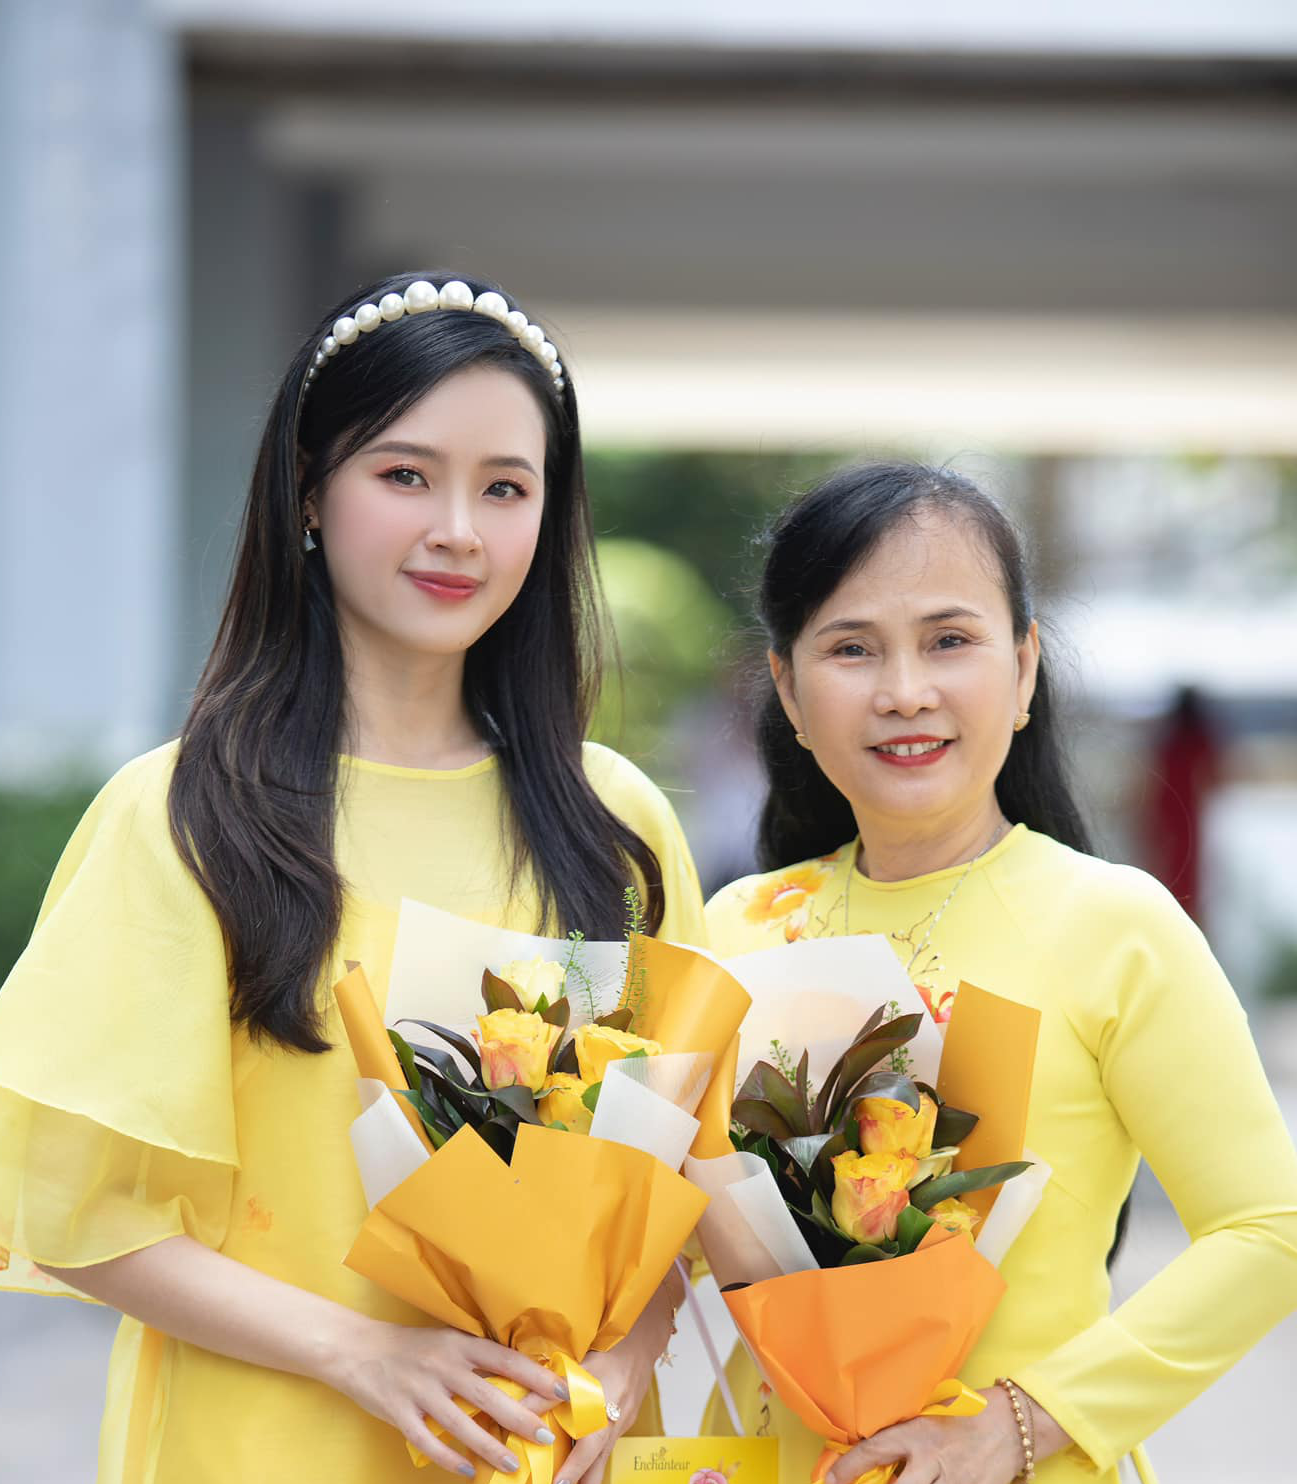 Sao Việt ngày 20/11: Đen Vâu kể kỷ niệm với cô giáo dạy Văn, Nguyên Vũ tri ân cố nghệ sĩ Phi Nhung - Ảnh 1.